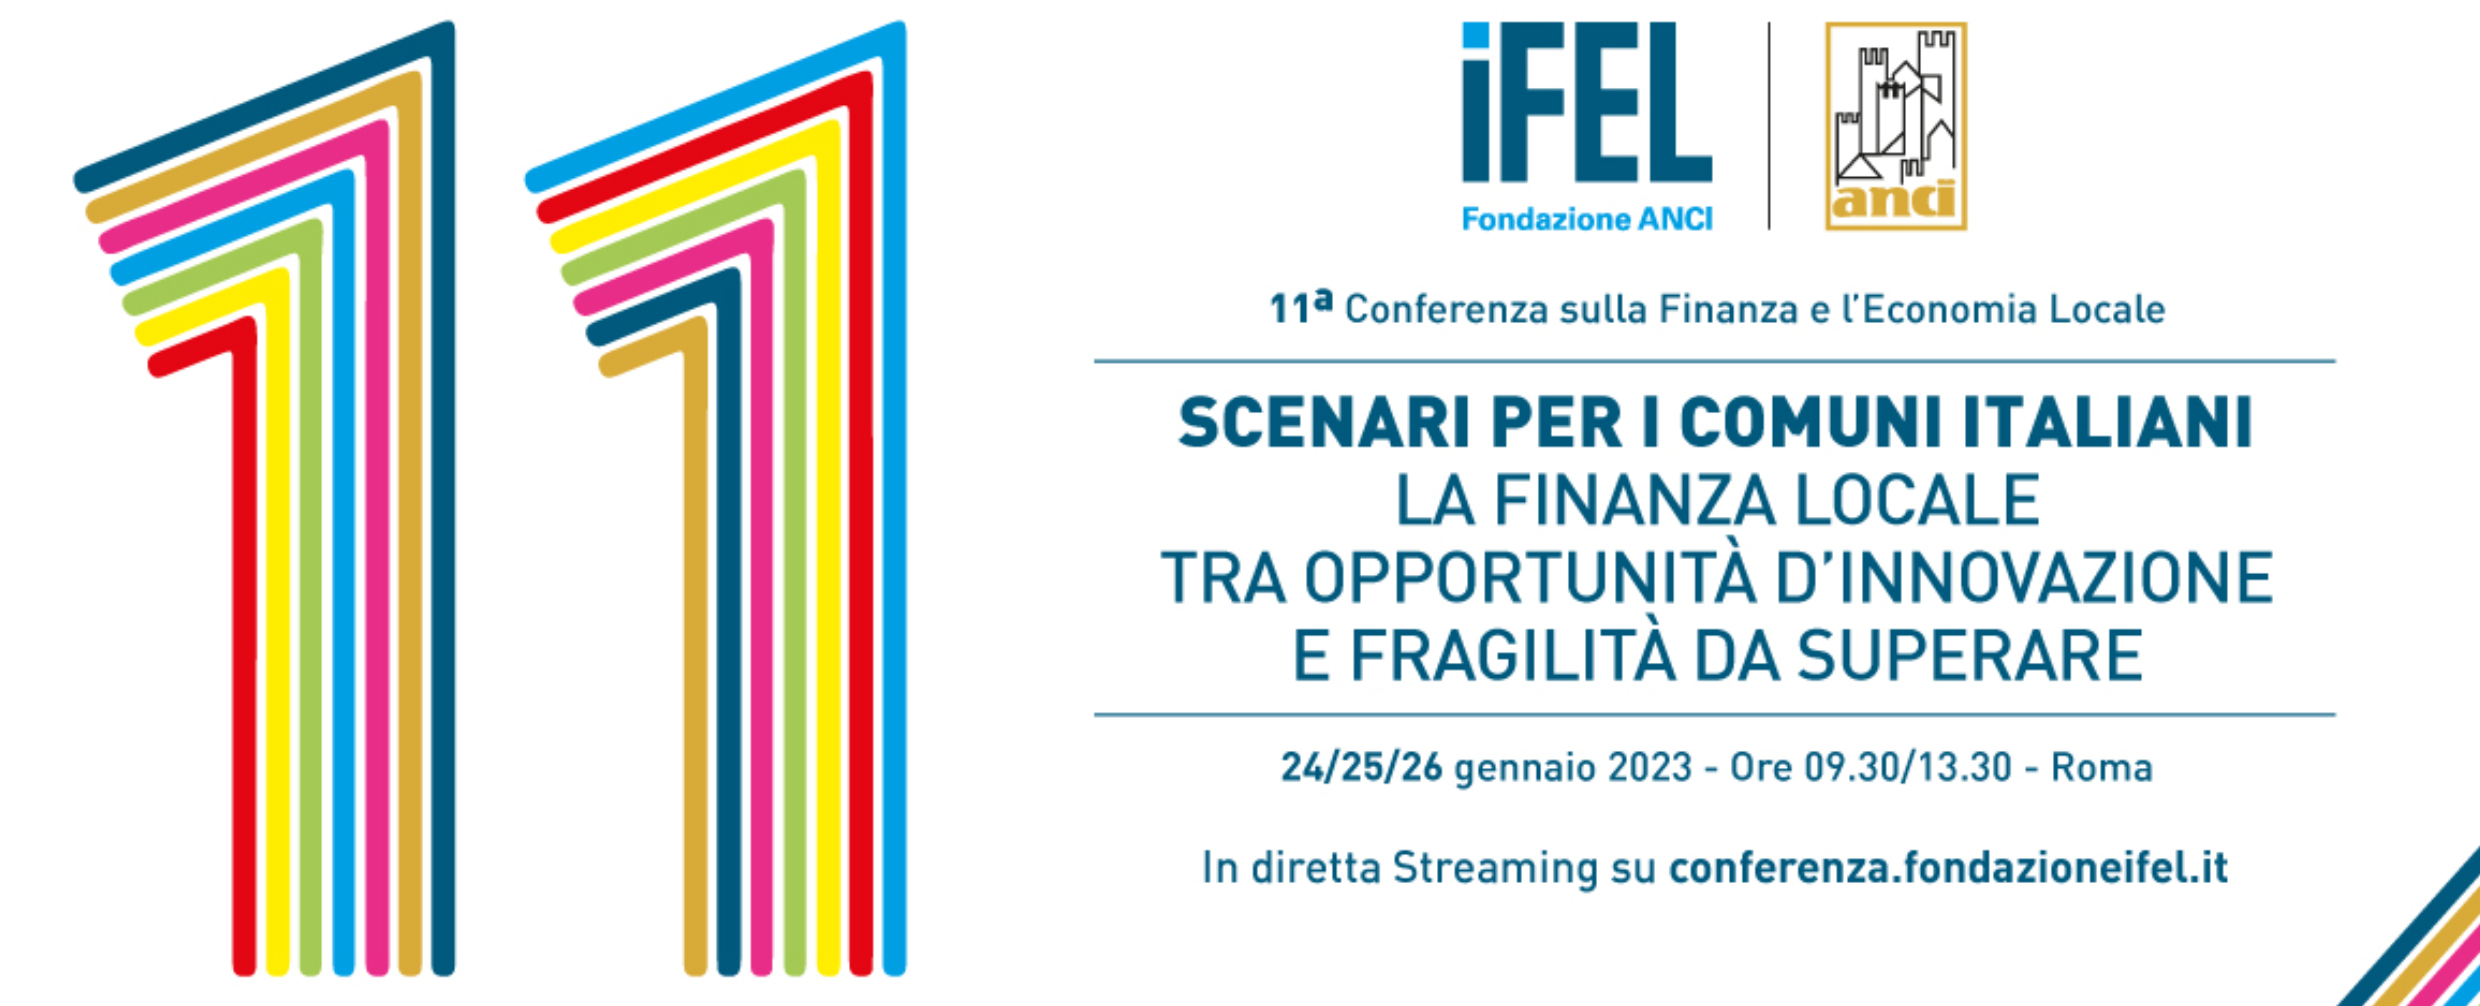 XI Conferenza IFEL - “Scenari per i Comuni Italiani. La finanza locale tra opportunità d’innovazione e fragilità da superare” | Seconda giornata  